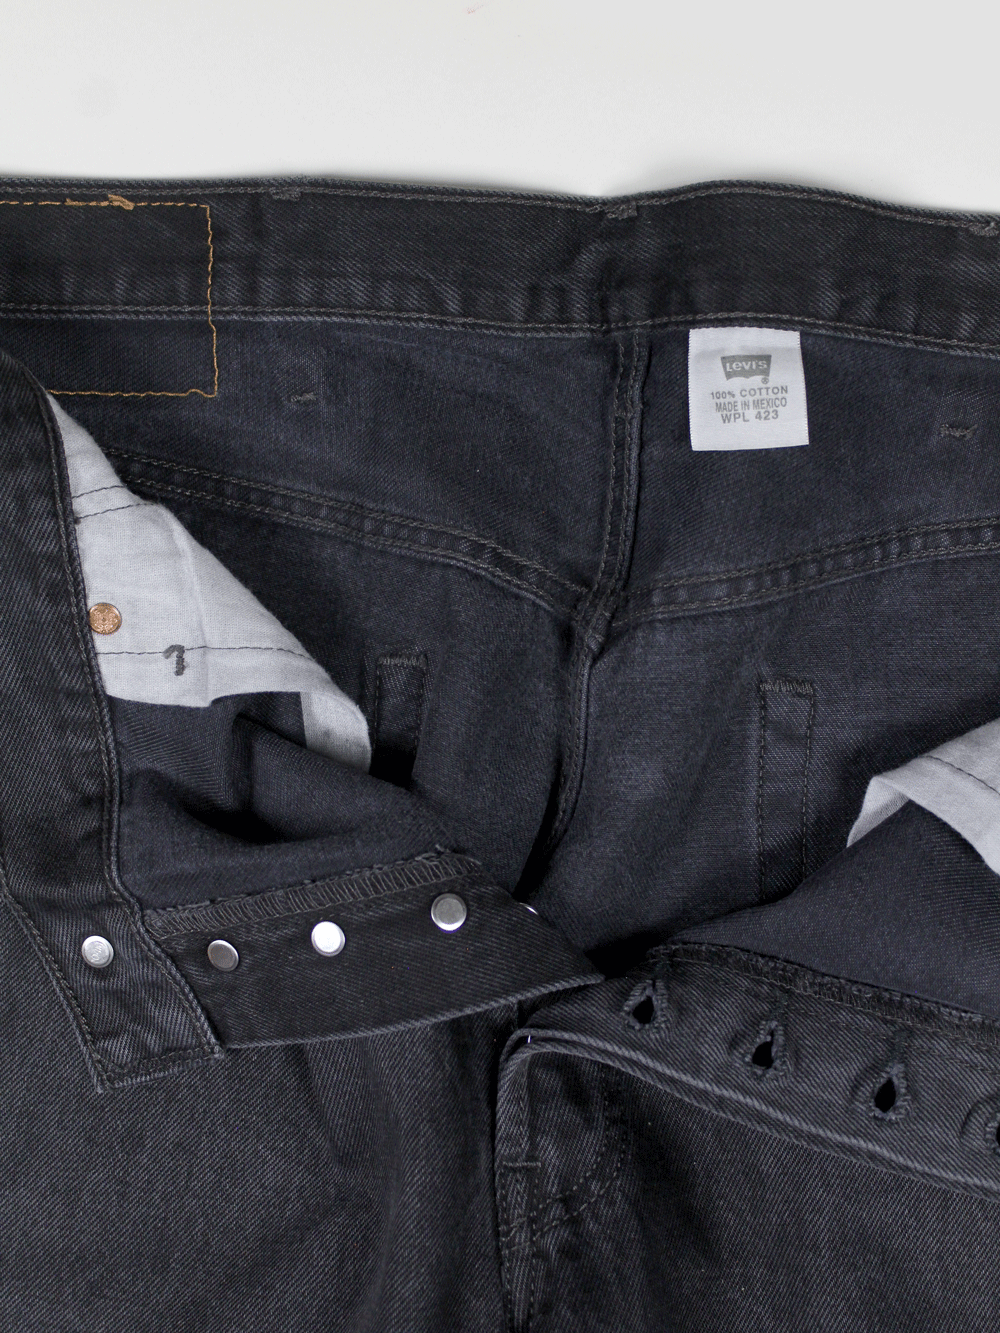 Levi's 501XX Vintage Jeans